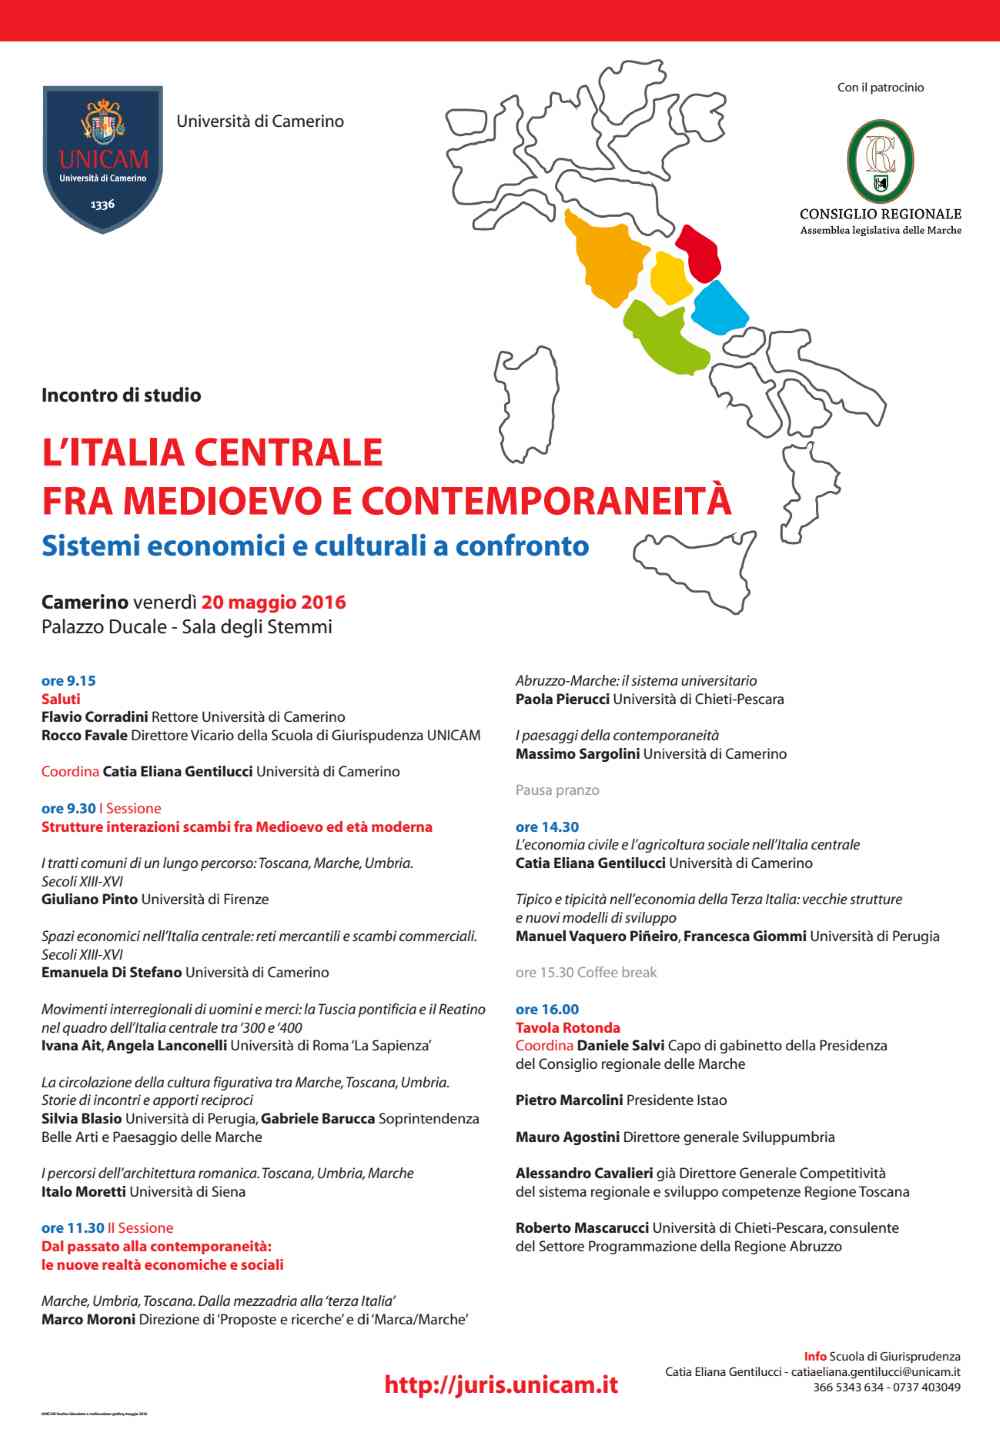 L’Italia Centrale fra Medioevo e Contemporaneità: convegno all’UniCam